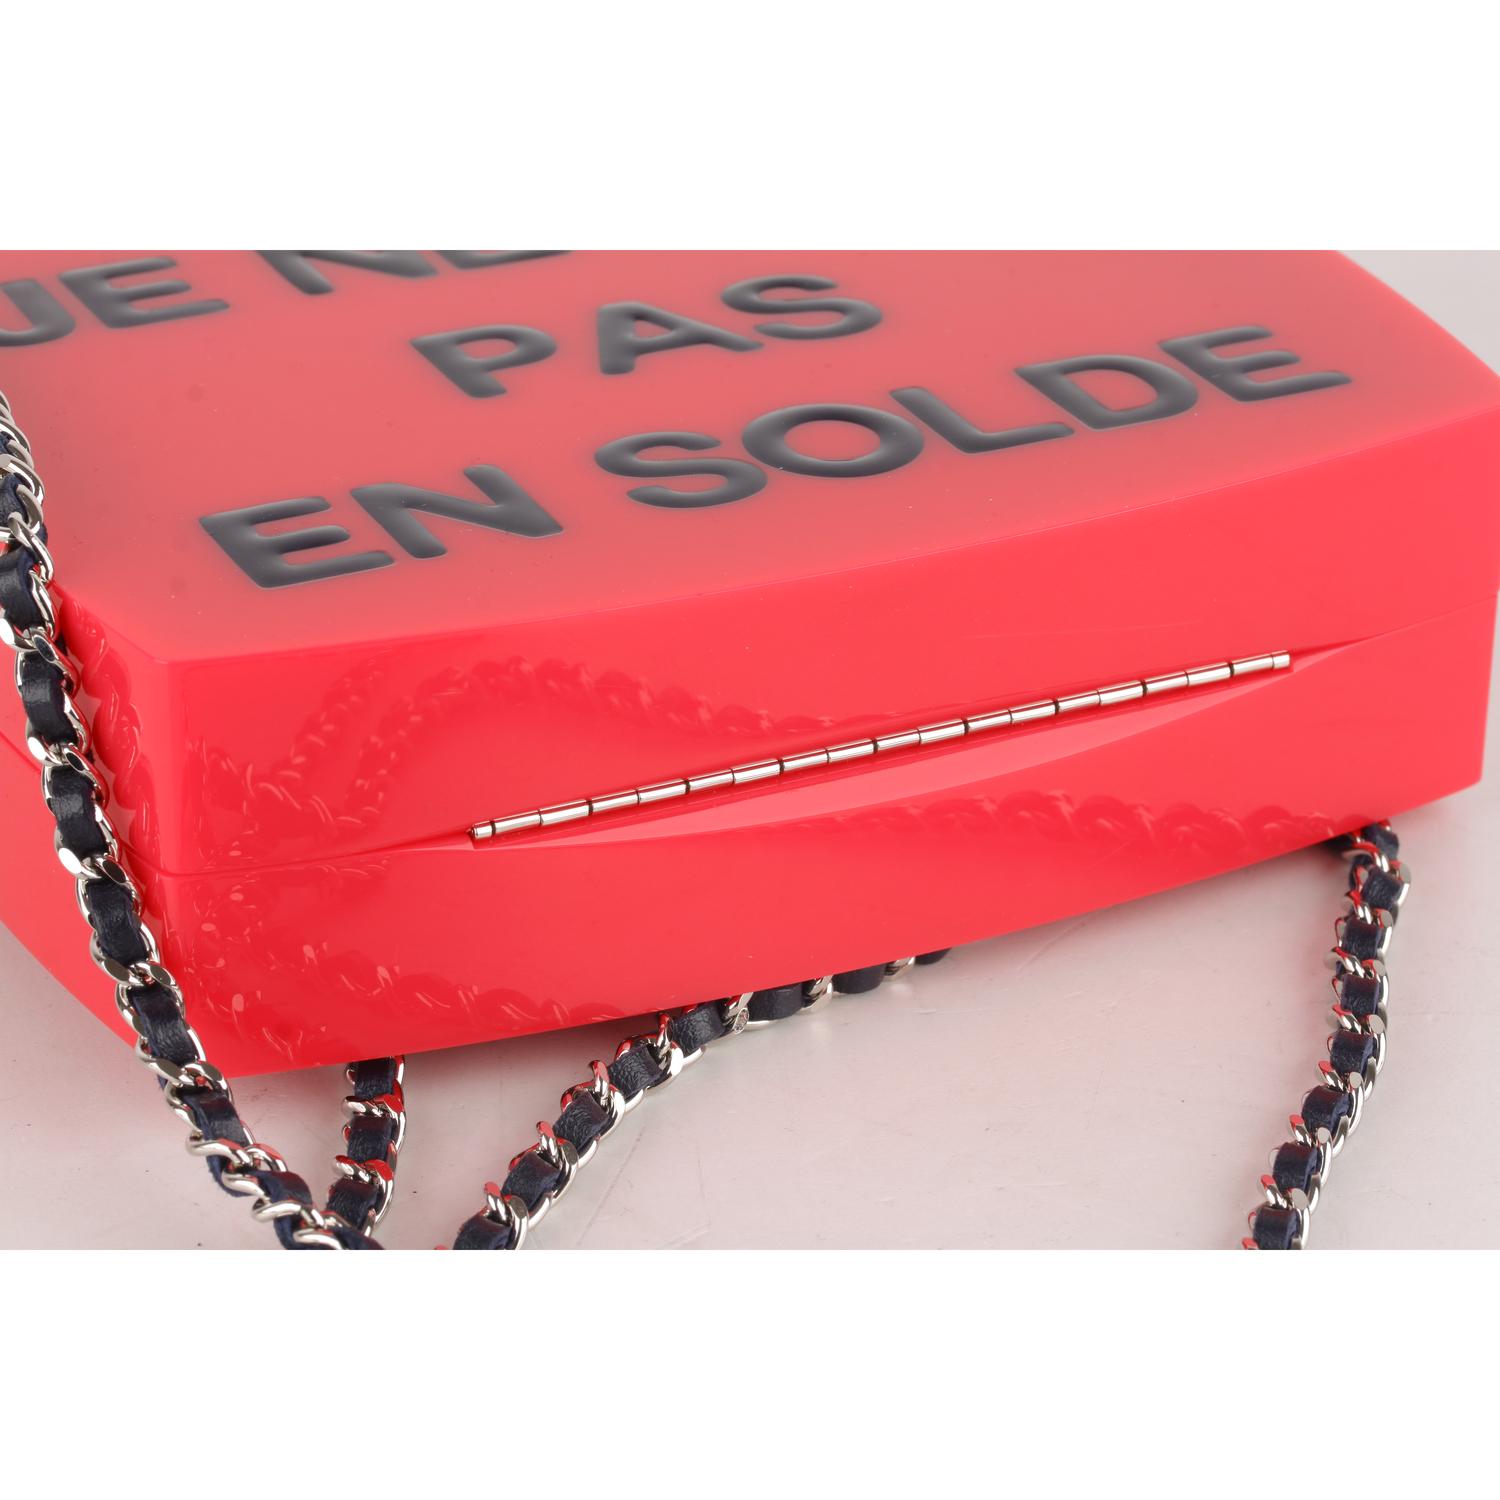 Chanel 2015 Je Ne Suis Pas En Solde Box Clutch with Chain Strap 1